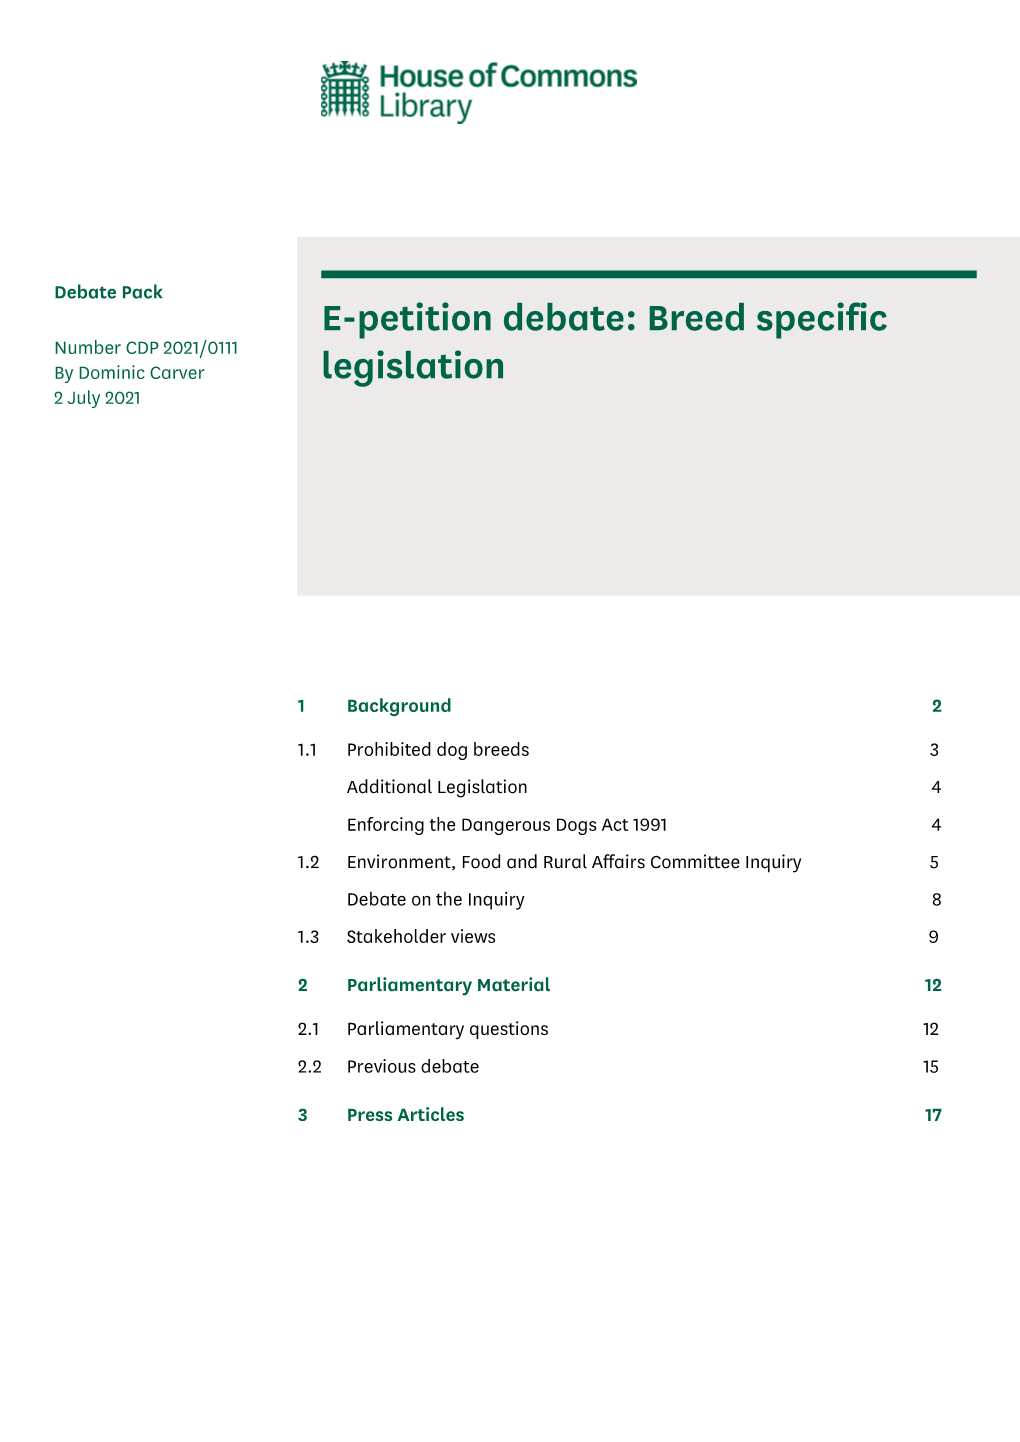 E-Petition Debate: Breed Specific Legislation